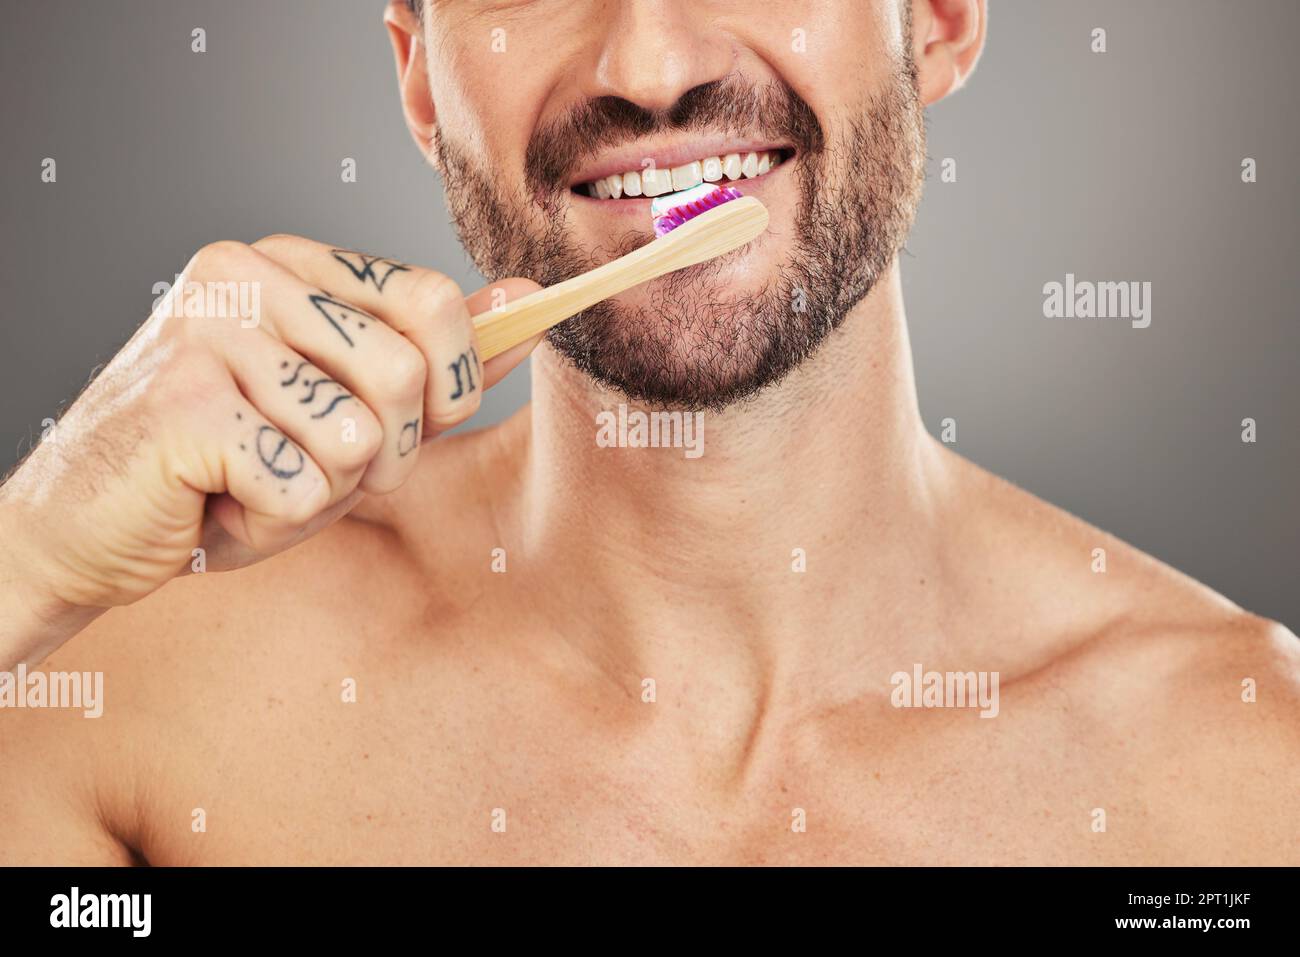 Uomo, bocca e spazzolino per la cura dentale, igiene e salute con una spazzola su uno sfondo grigio studio. Igiene orale, denti sani e wellbei dentale Foto Stock